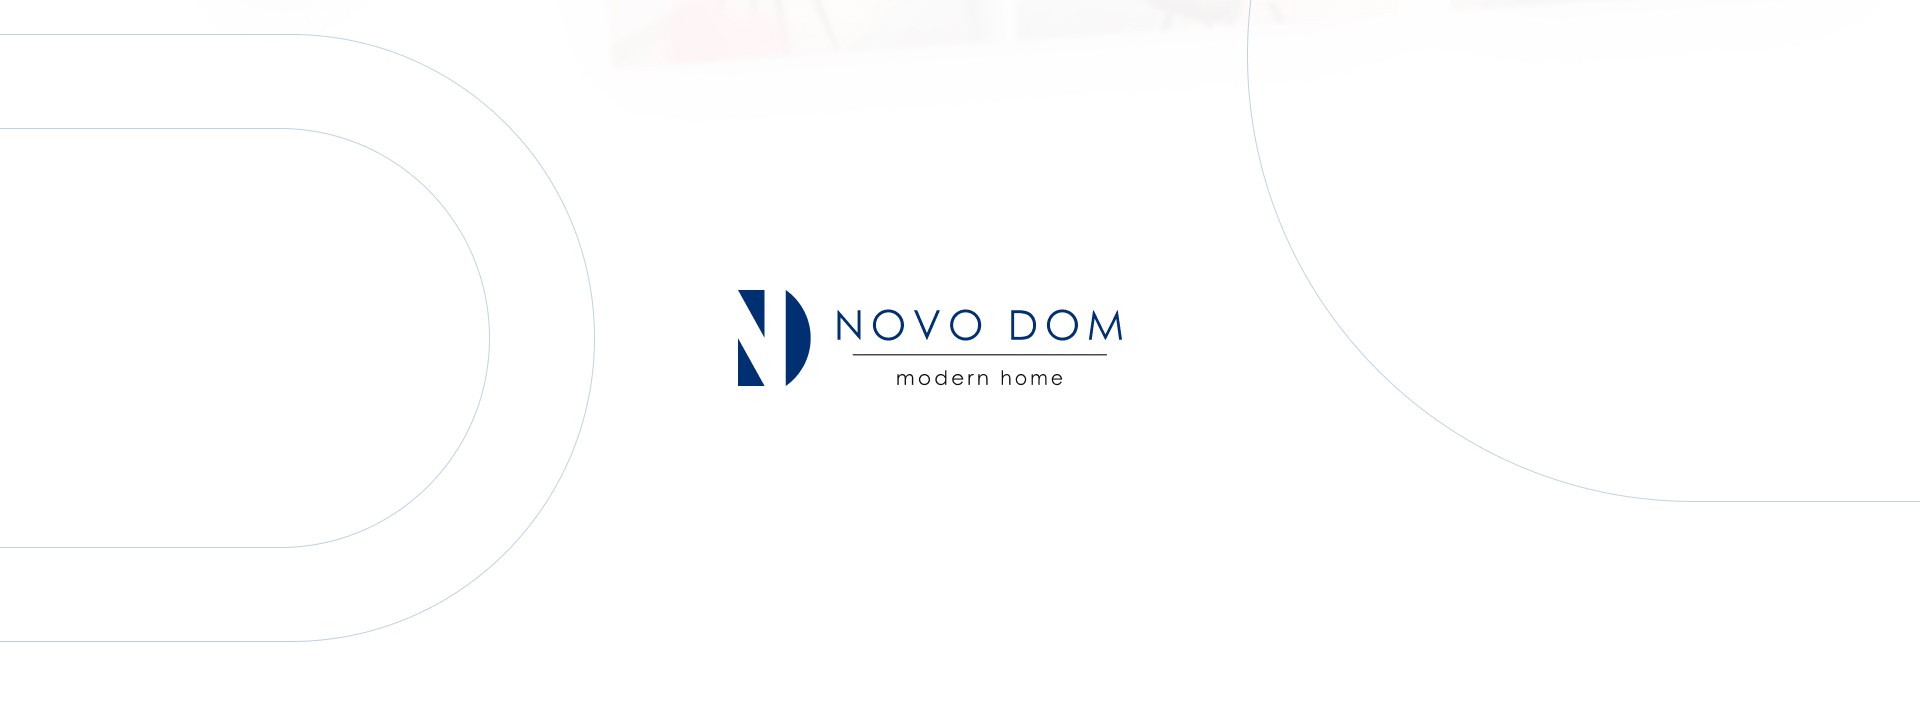 Novodom - Realizacja - Agencja ROXART